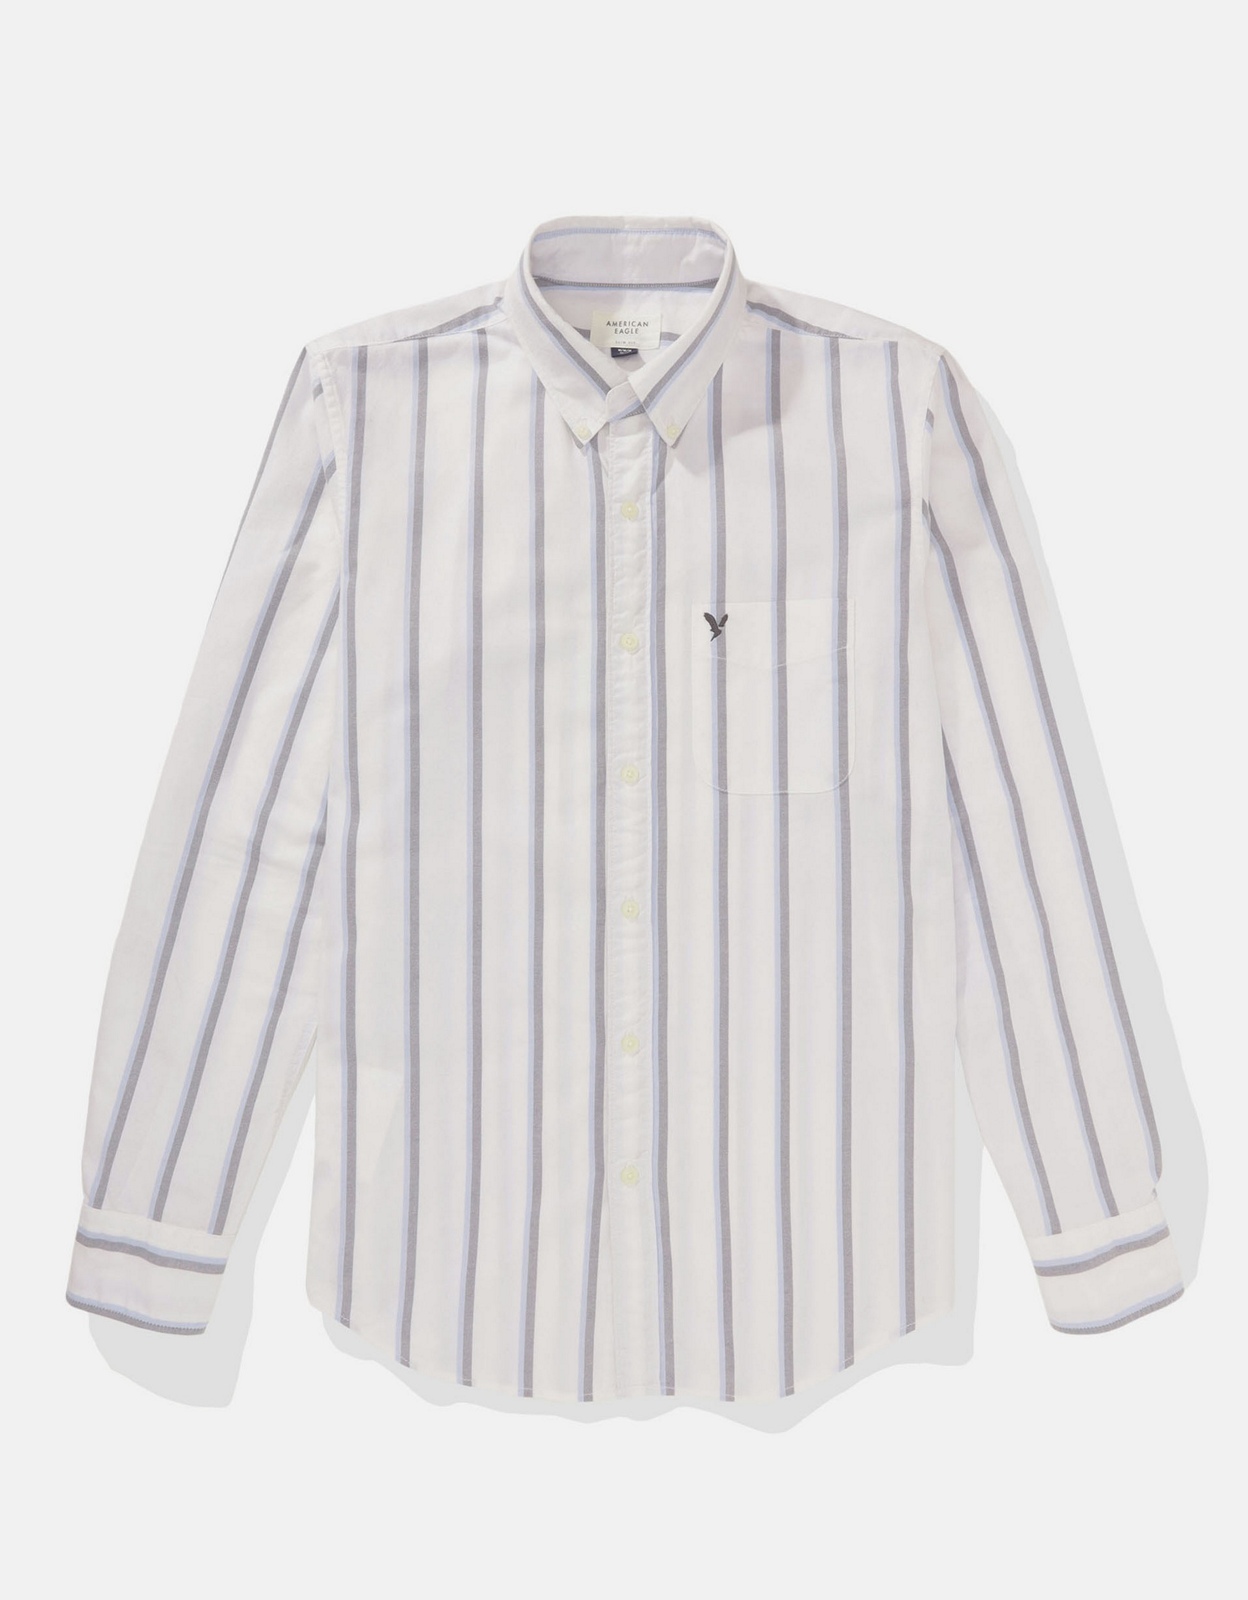 若者の大愛商品 Up American Shirt Eagle Sleeve Vintage Slim Shirt Fit White Shirt  Long Mens AE Size Large Striped Eagle Blue Button-Up White Men Fit XL  Striped Button Slim Button Blue American 海外